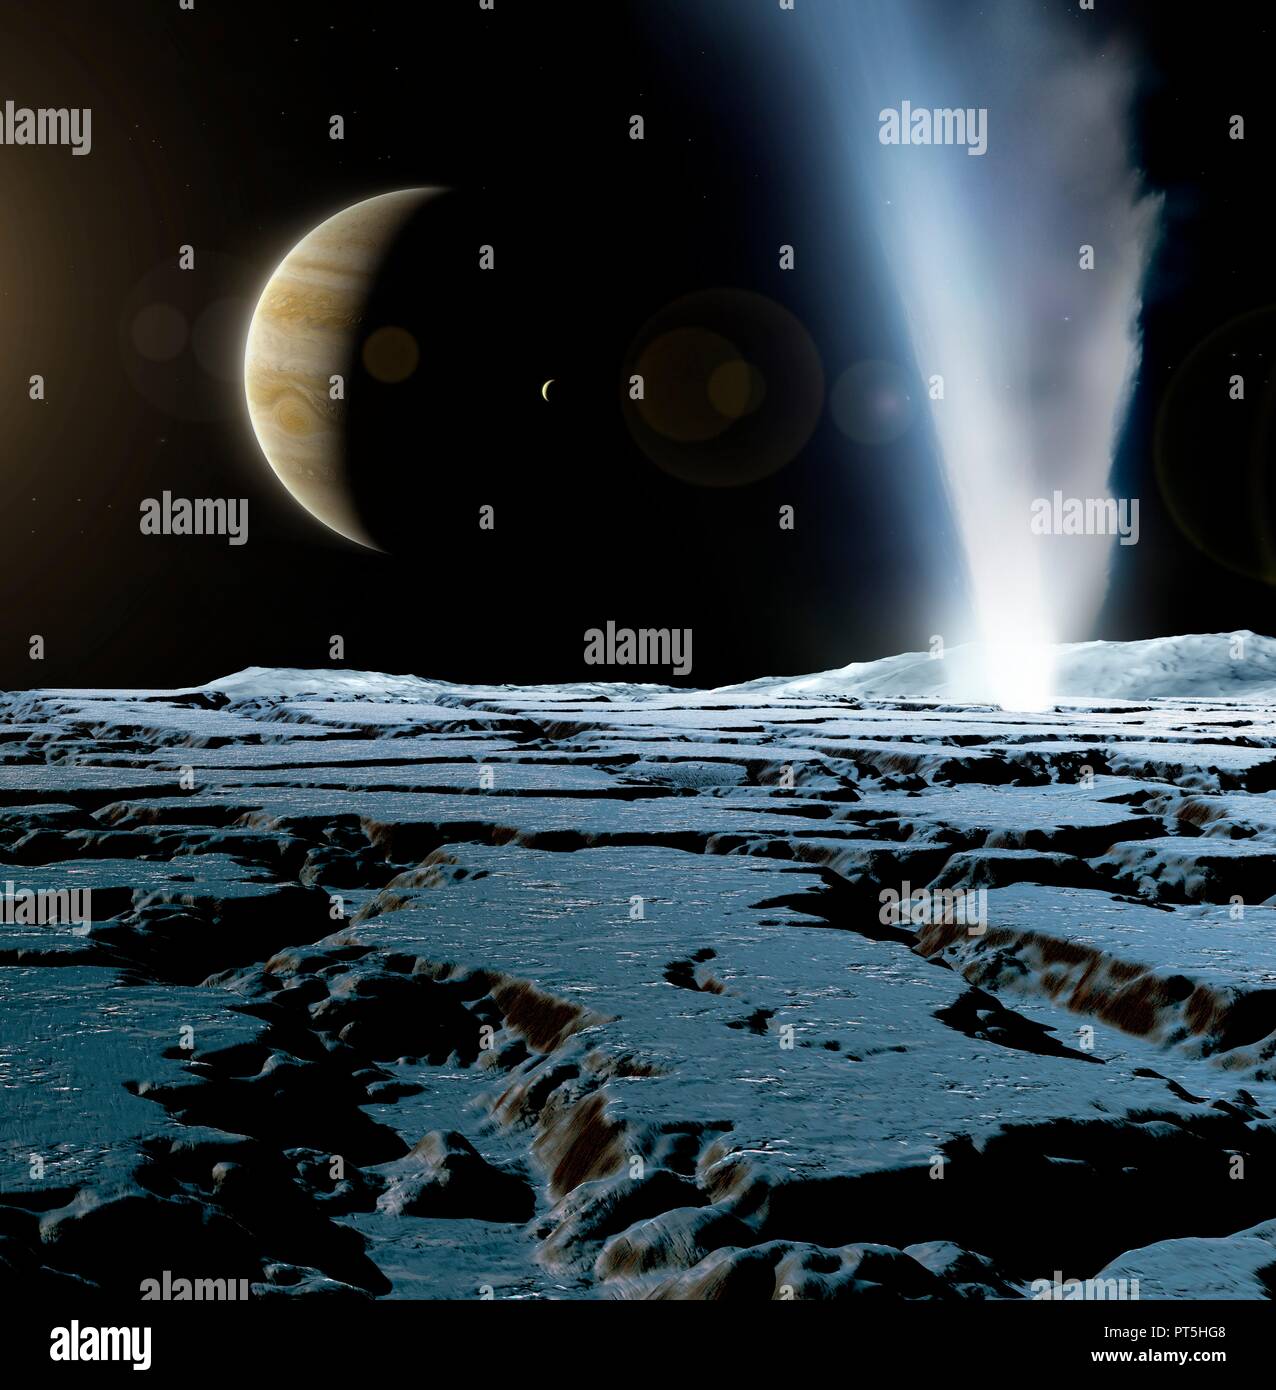 Geyser sur Europa, illustration. Europa est la plus petite des quatre lunes galiléennes de Jupiter, et le deuxième plus proche de la planète. Sa surface est relativement lisse et glacée. Répercussions sur les météorites causer la fonte de la surface, permettant à l'eau pour lisser avant de regel. Il existe une preuve de grande échelle de la glace, peut-être appuyée par un manteau liquide et conduit par des procédés thermiques à l'intérieur de la lune. Geysers de glace ont été vu sur cette lune, avec jets de matière riche en crachant de l'eau 200 km dans l'espace. Banque D'Images